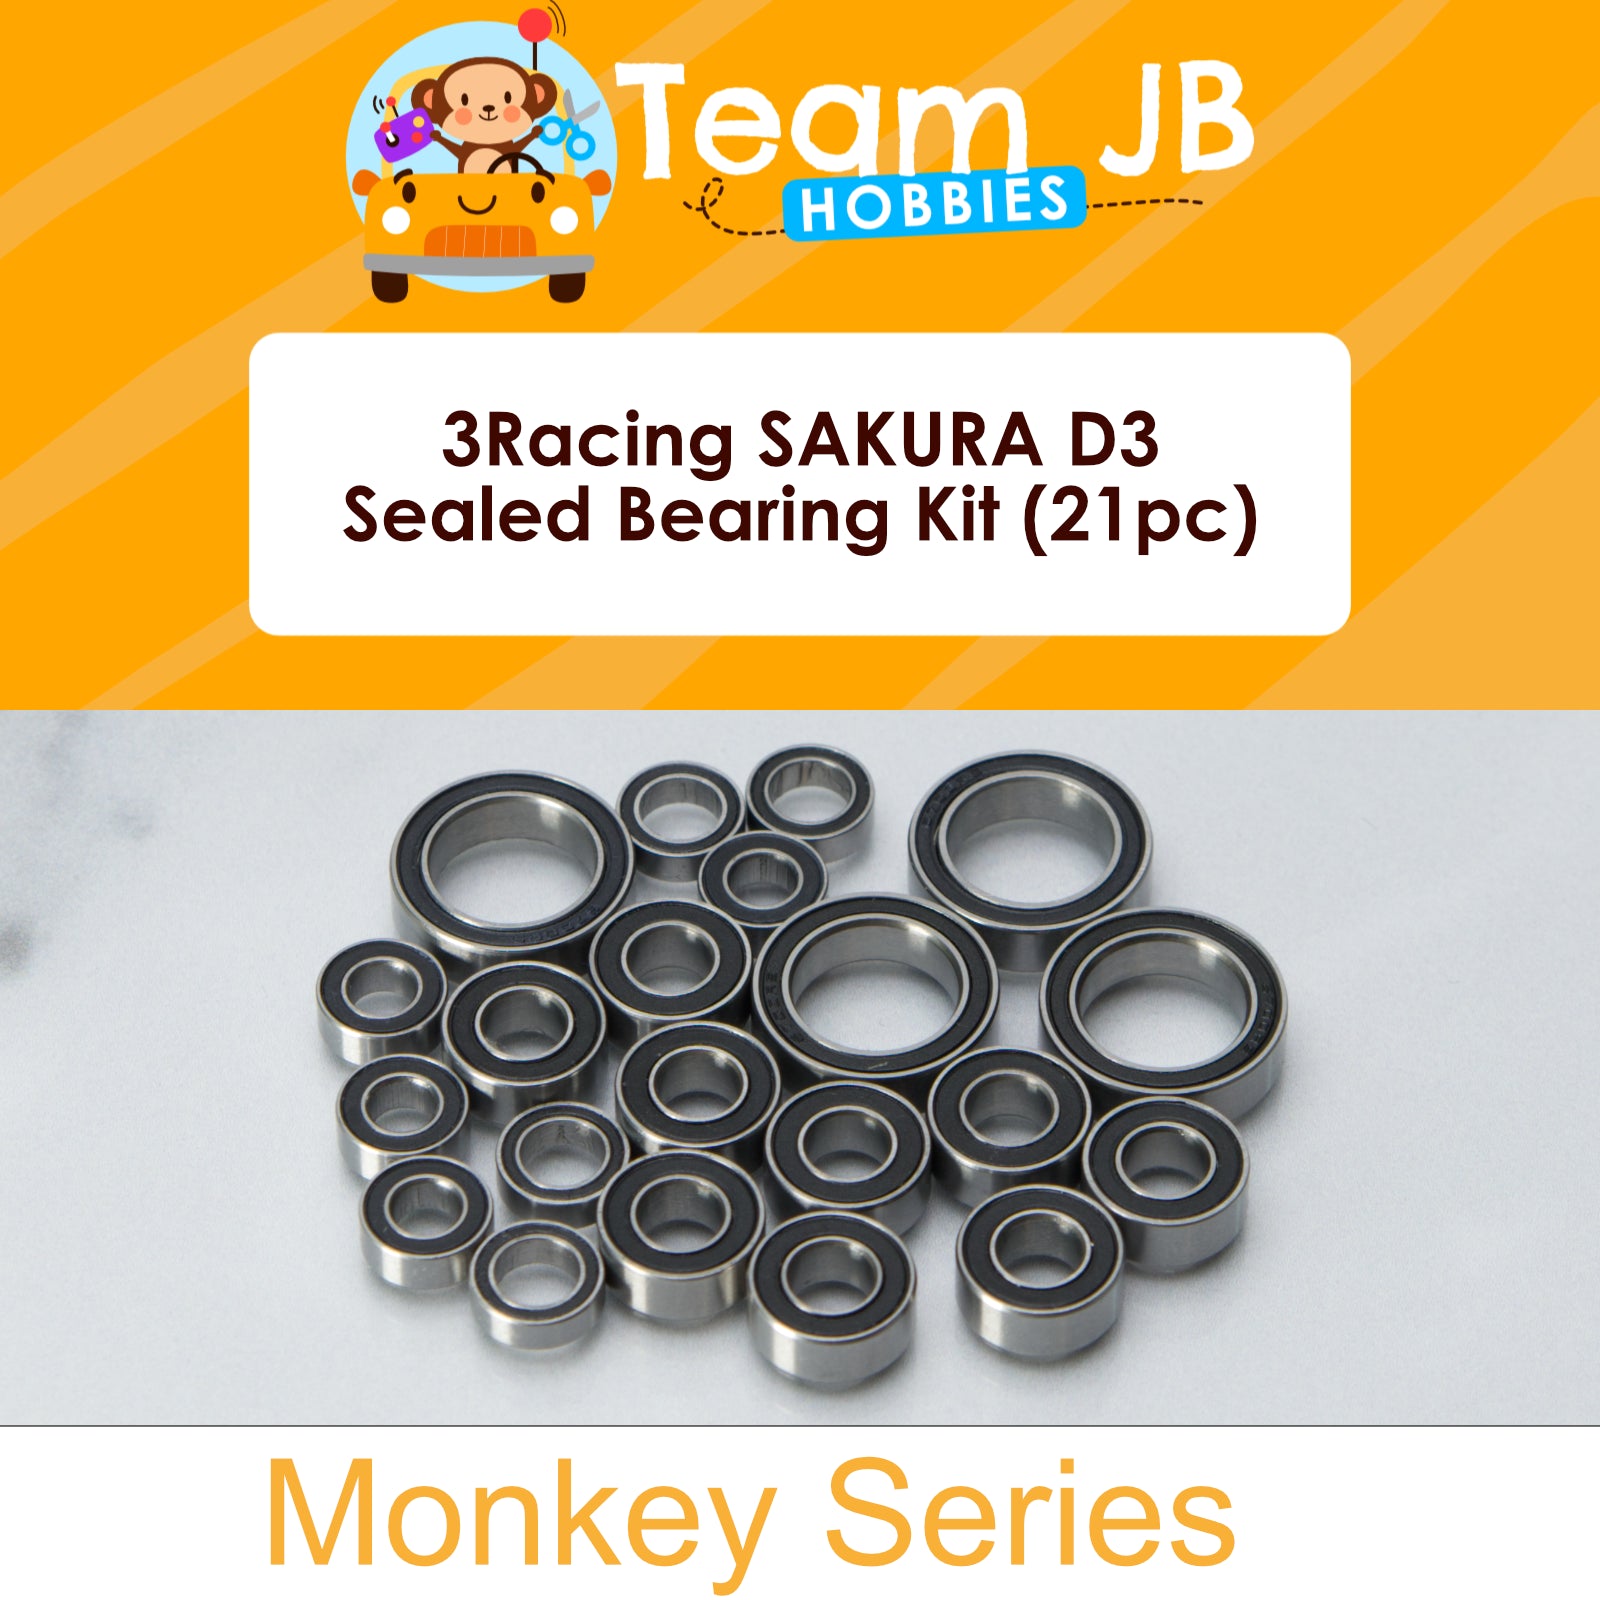 3Racing SAKURA D3 - Sealed Bearing Kit